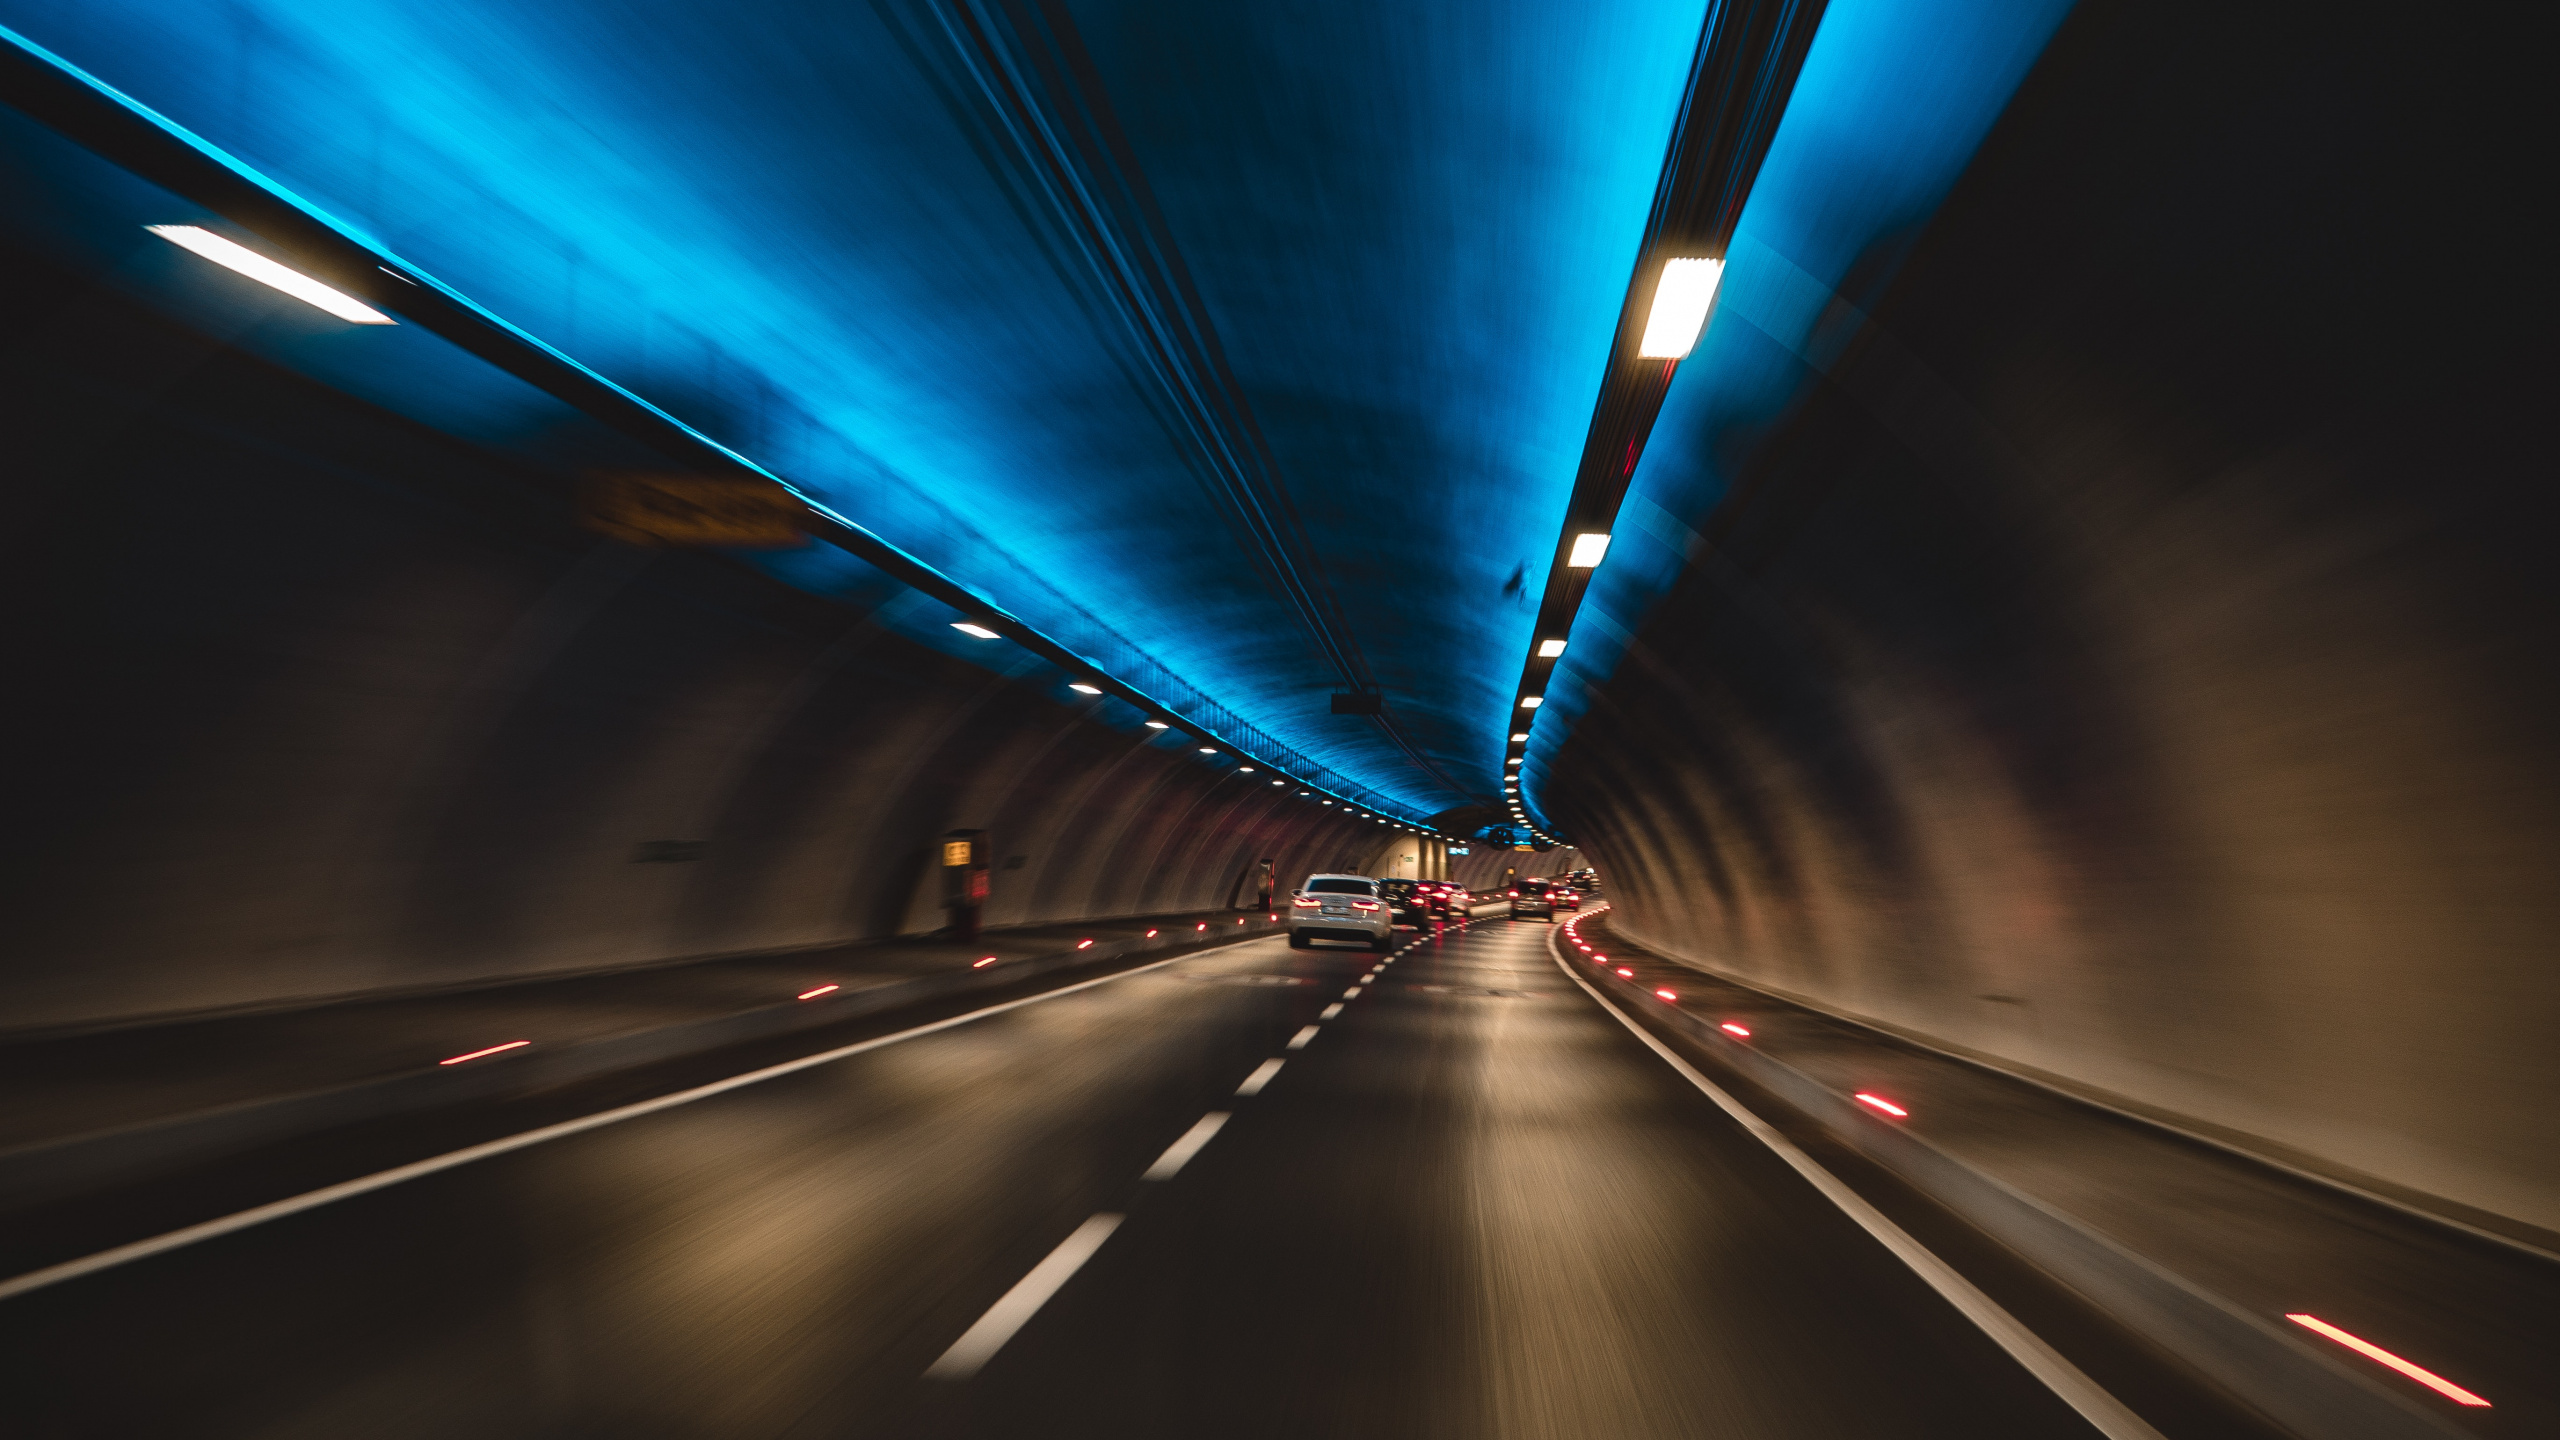 隧道, 高速公路, 车道, 光, 基础设施 壁纸 2560x1440 允许